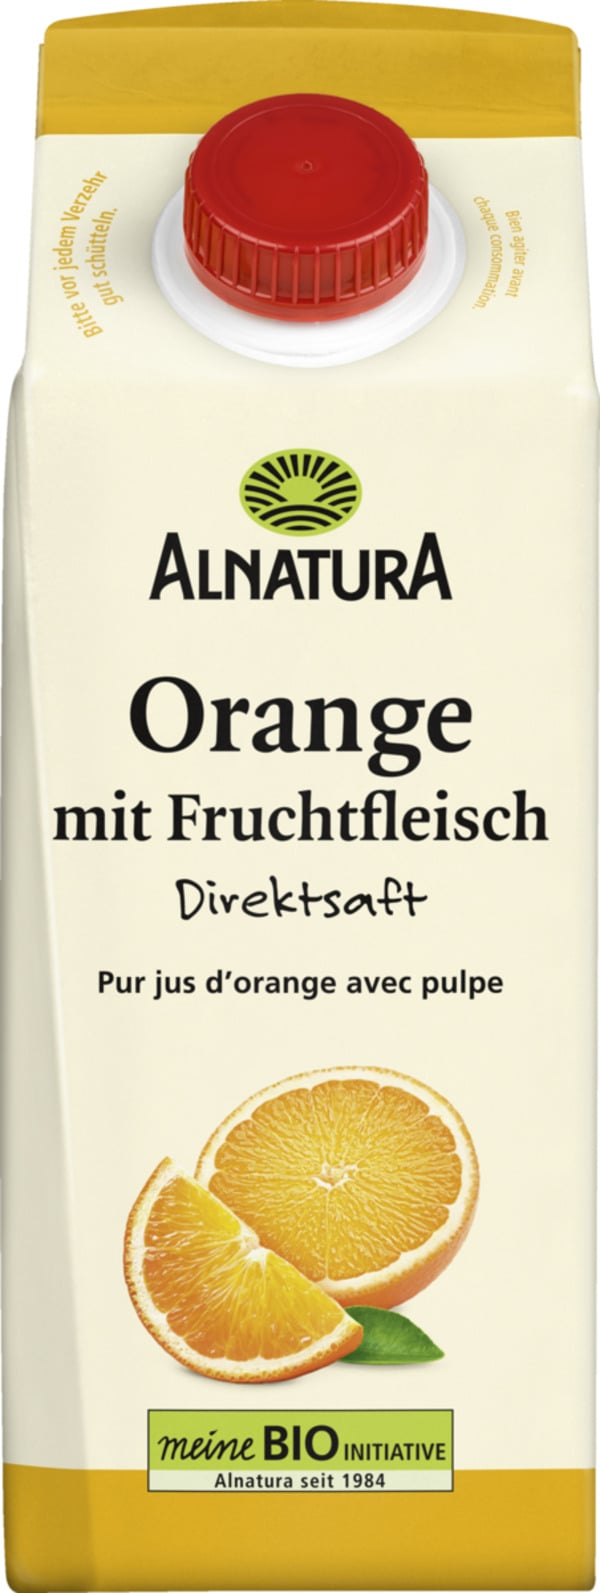 Bild 1 von Alnatura Bio Orangensaft mit Fruchtfleisch, 750 ml